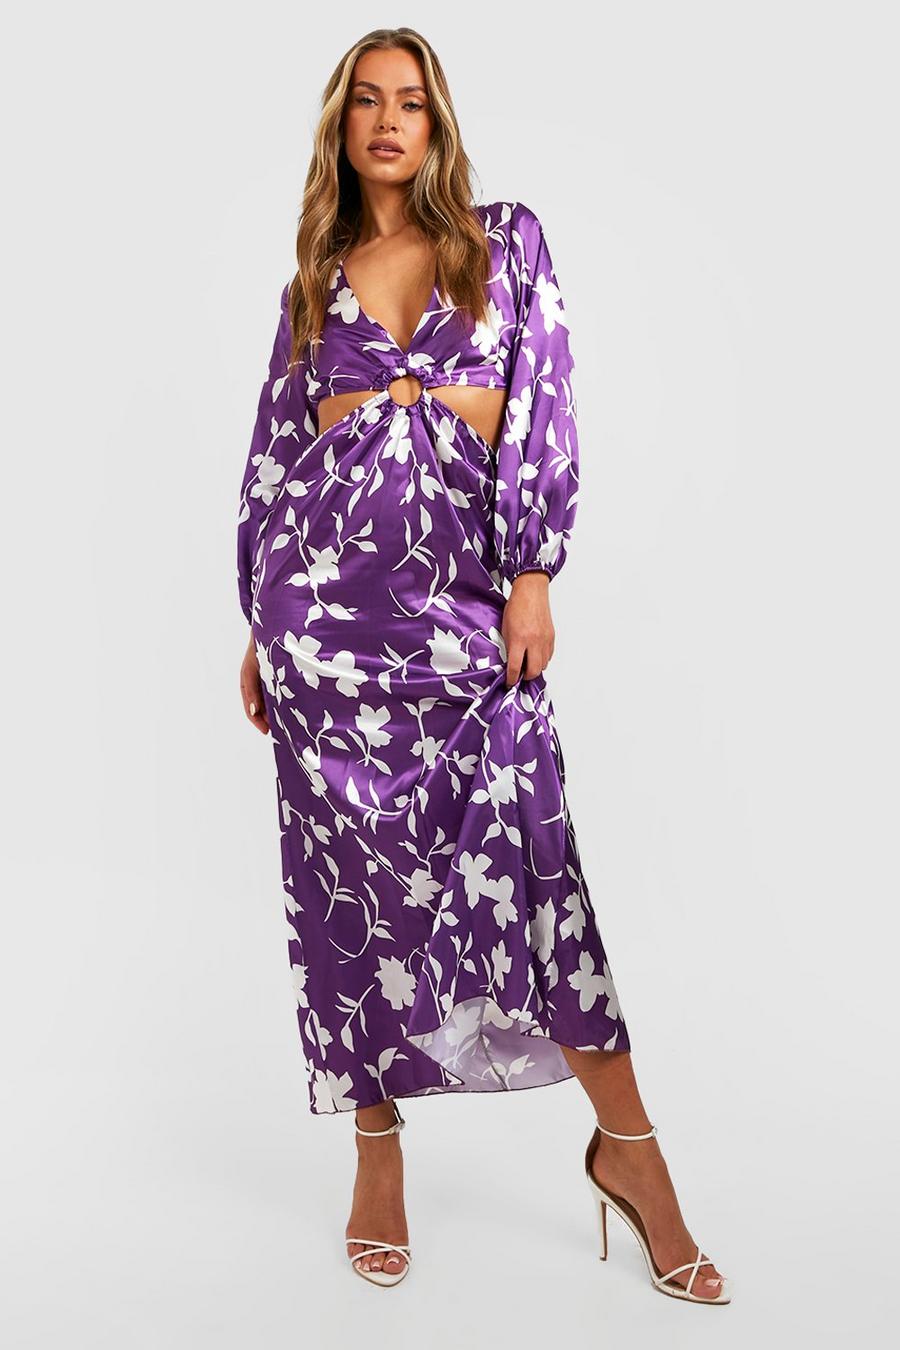 Jewel purple violet Floral Cut Out Maxi Dress